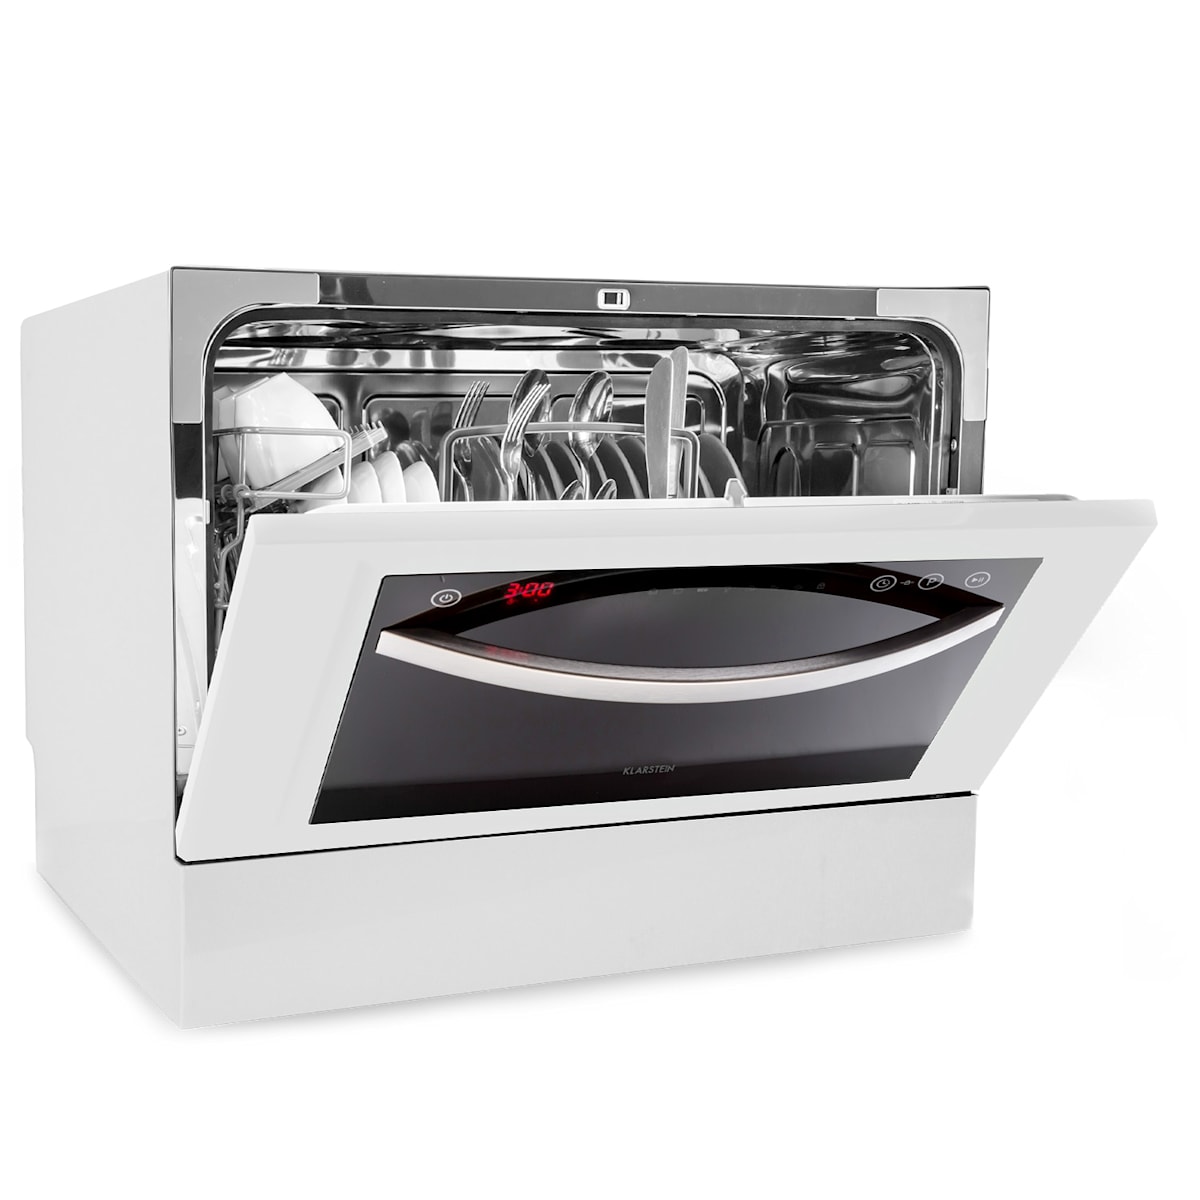 Mini Lave Vaisselle 6 Couverts – Klarstein – Lave-vaisselle Pose